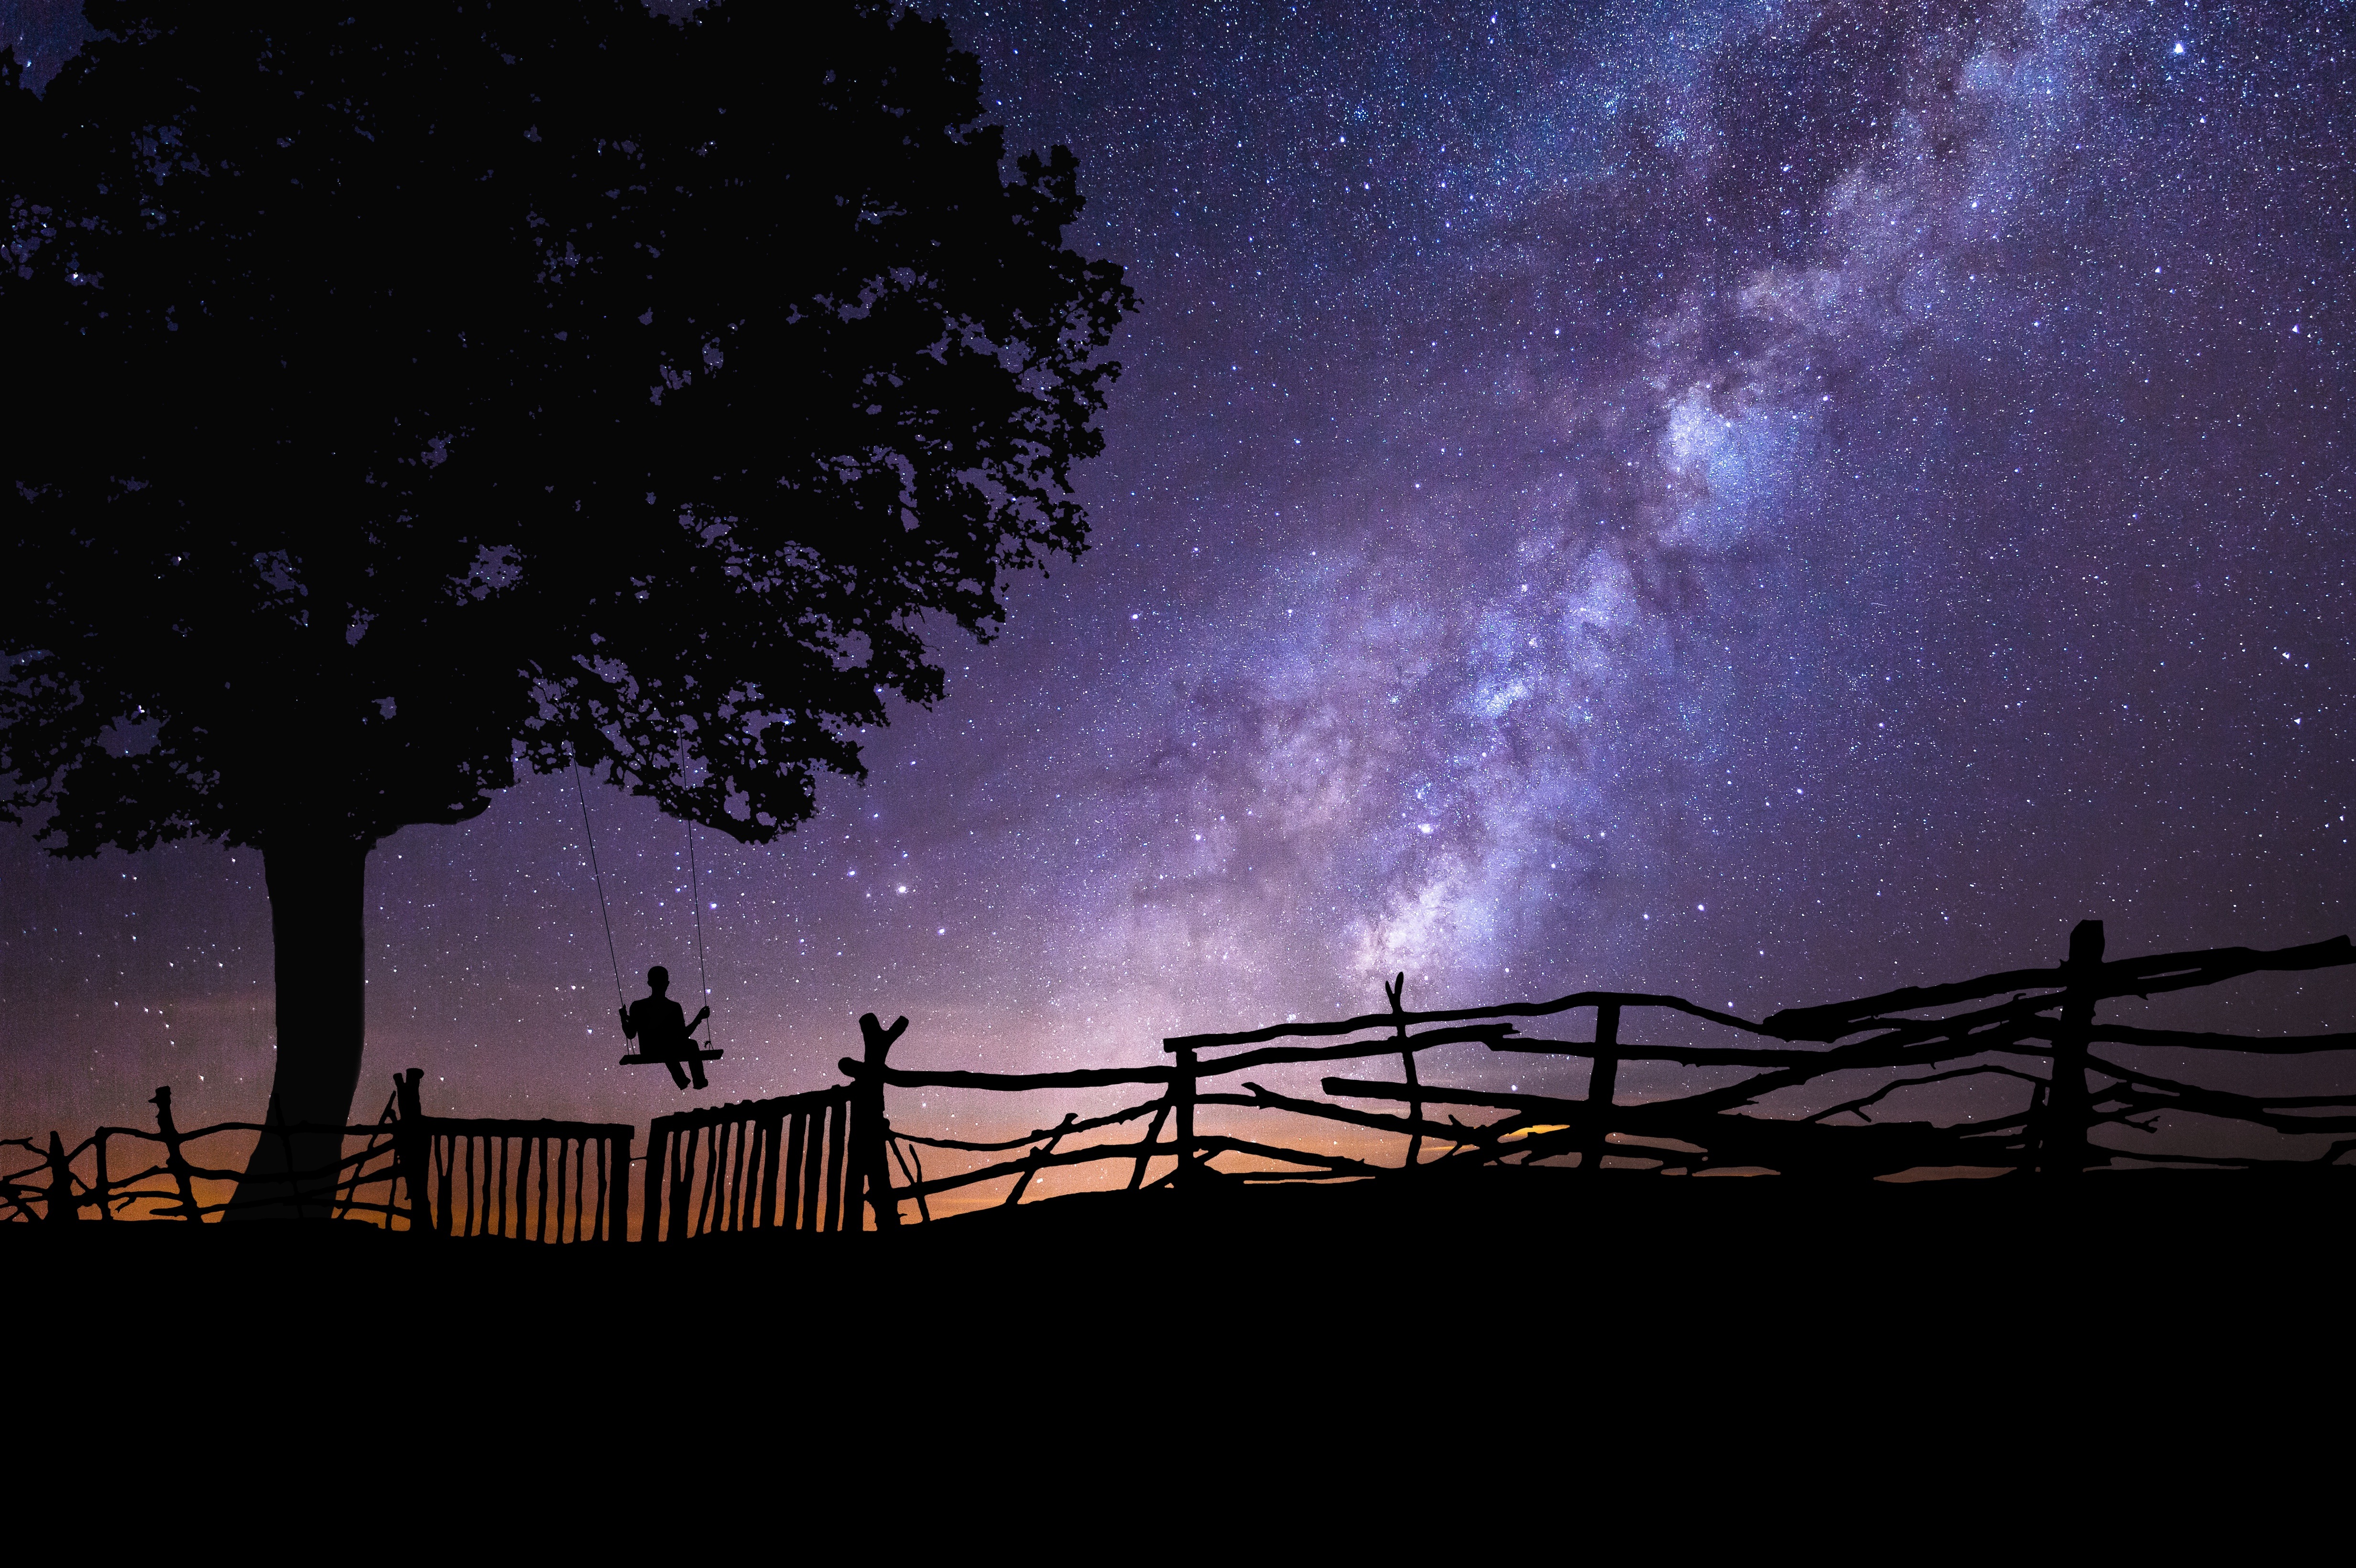 starry sky, dark, night, silhouette, wood, tree, swing Free Stock Photo